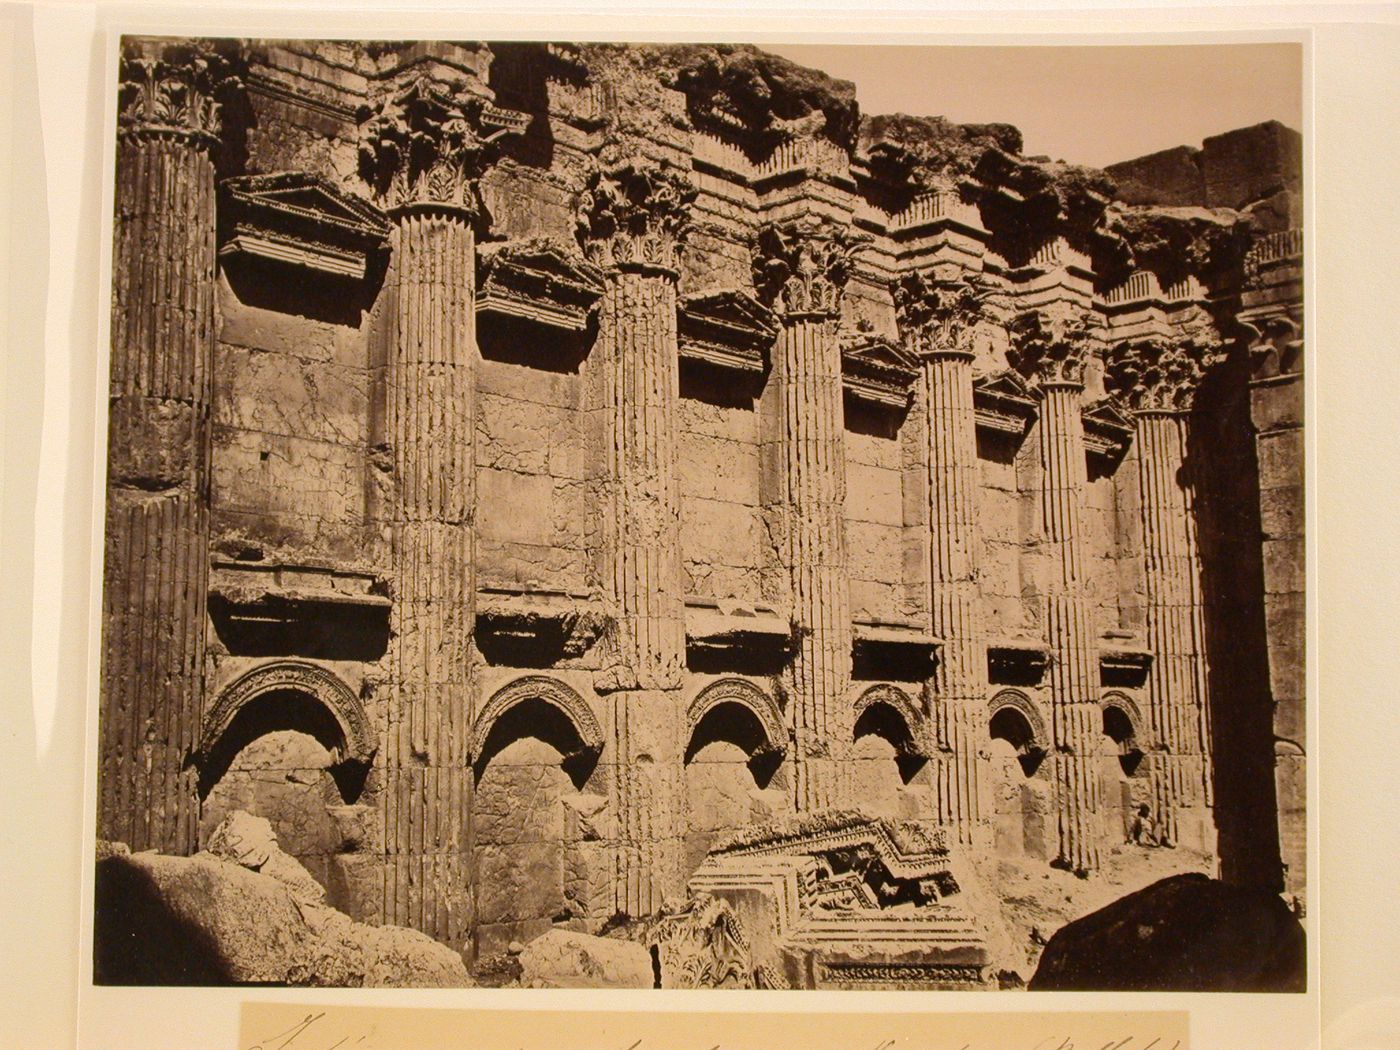 Interieur du Temple de Jupiter (Balbek)